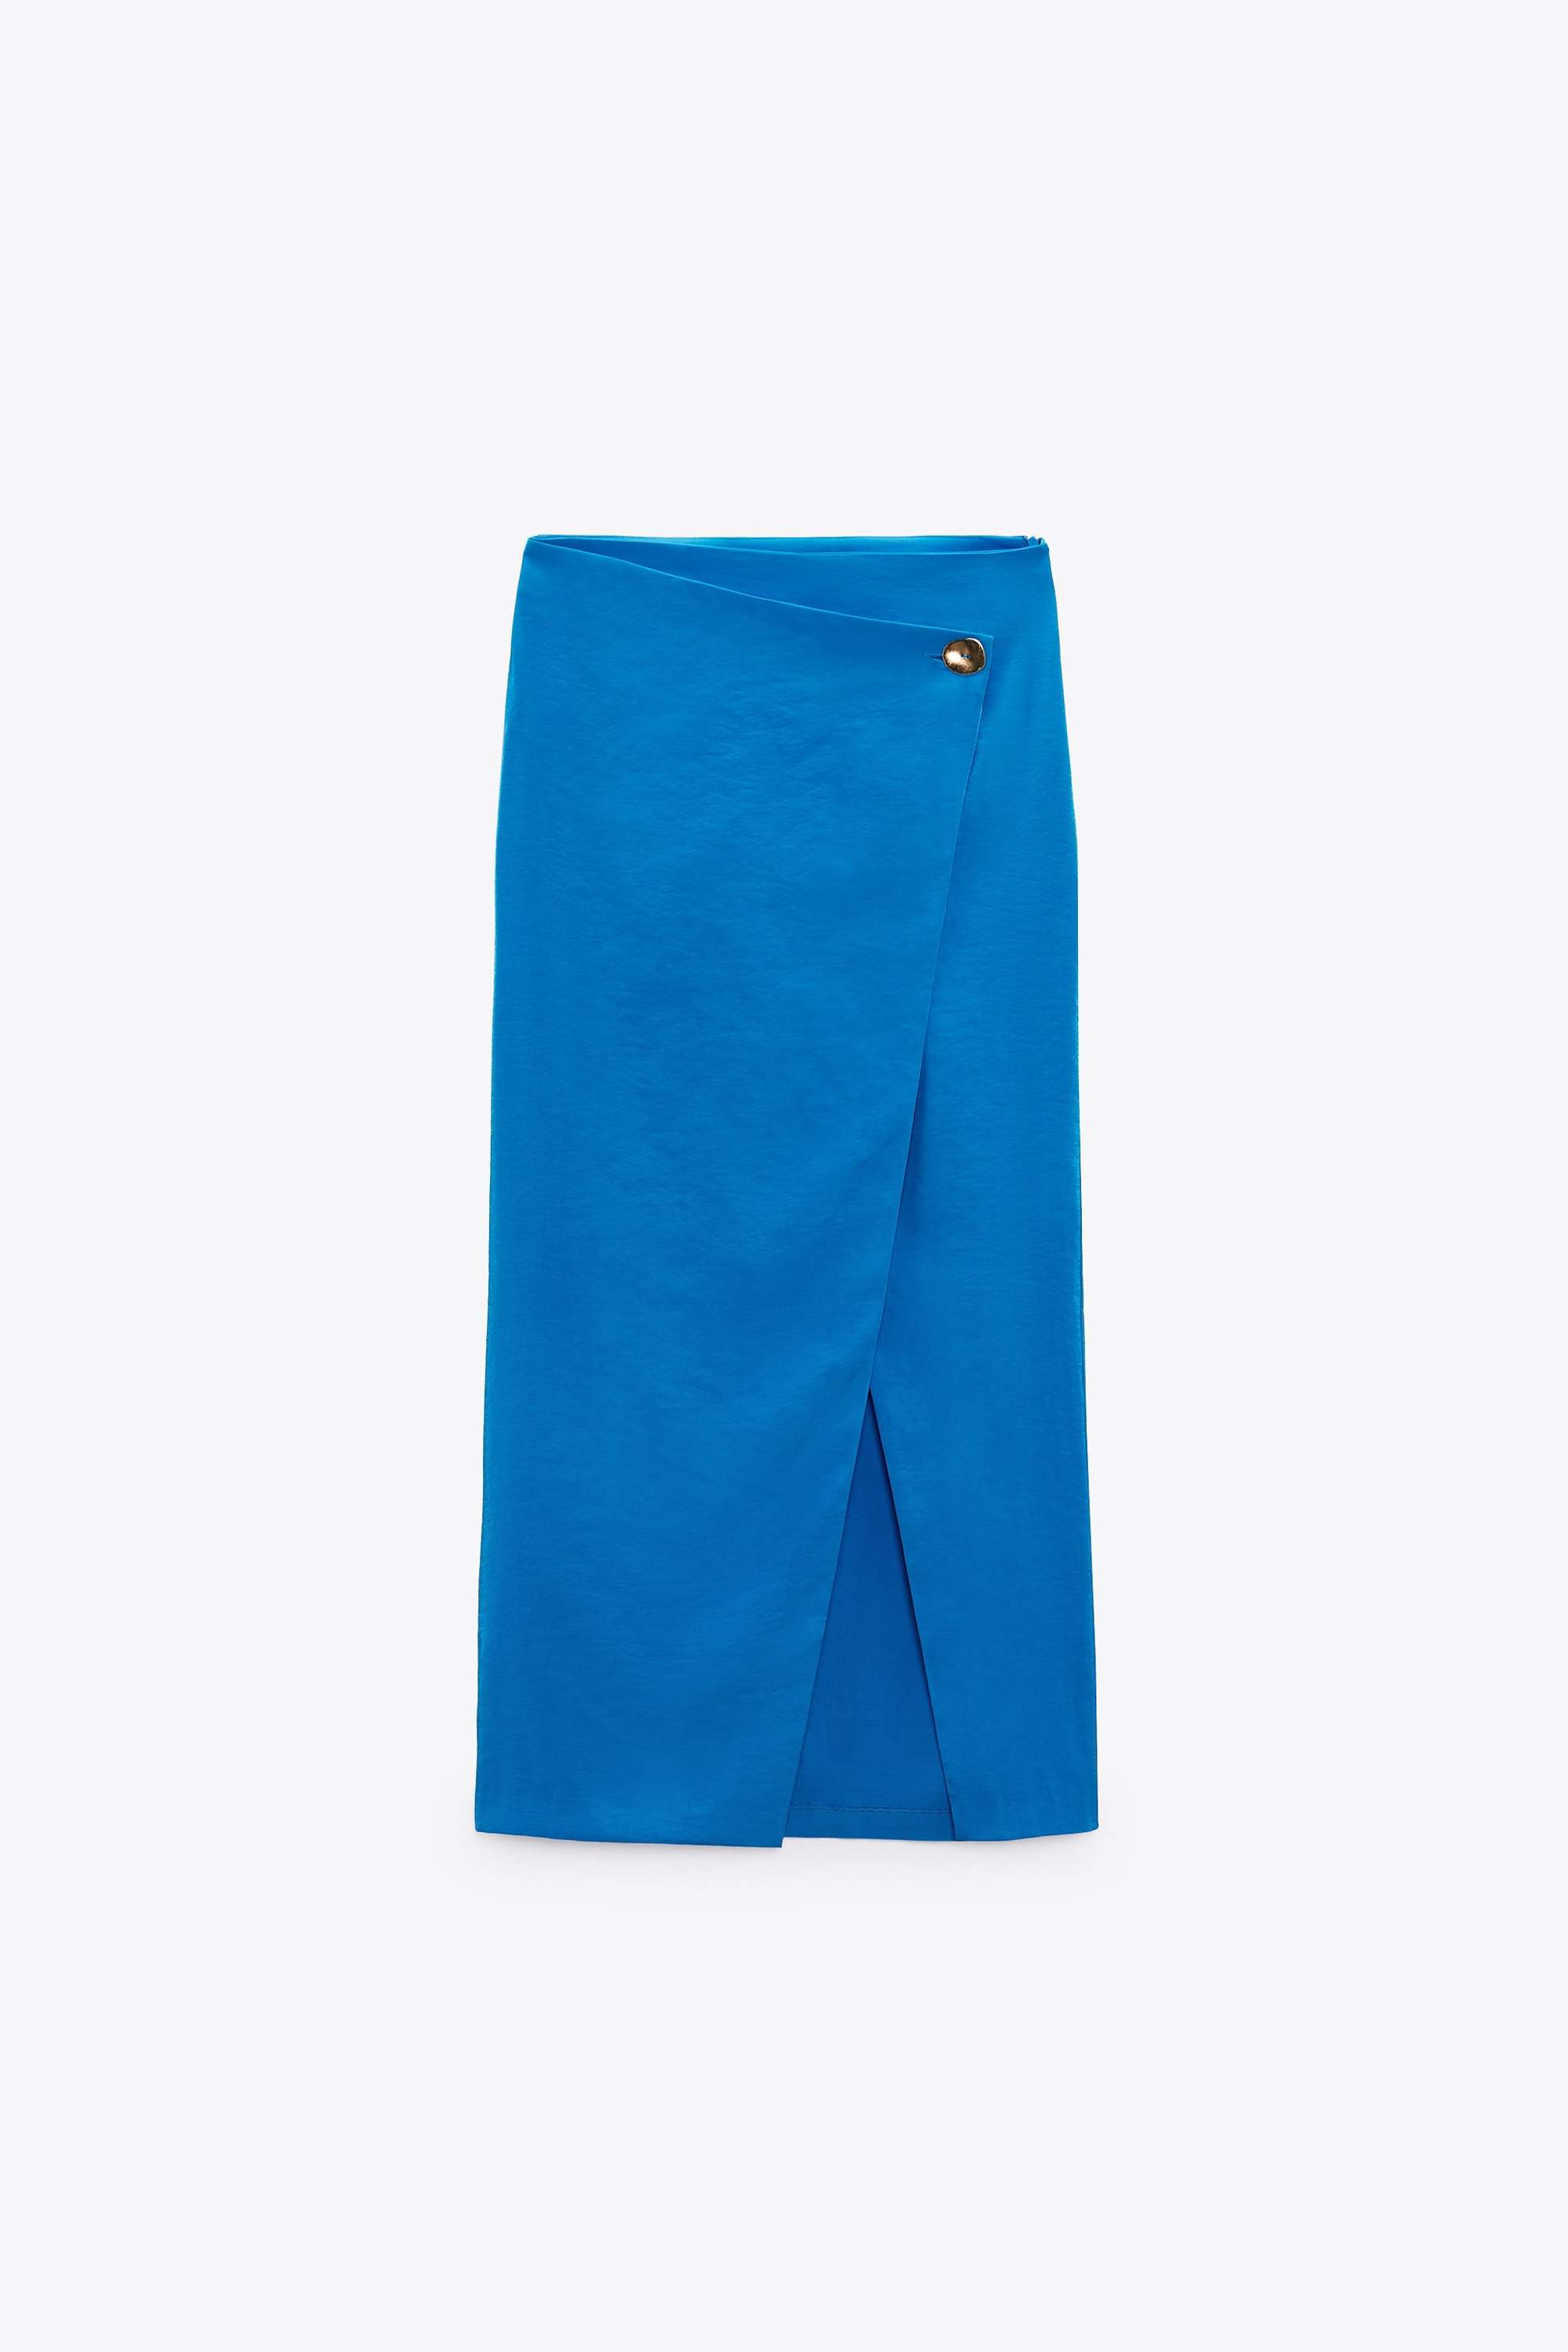 Faldas pareo con efecto vientre plano: minimal y en azul eléctrico